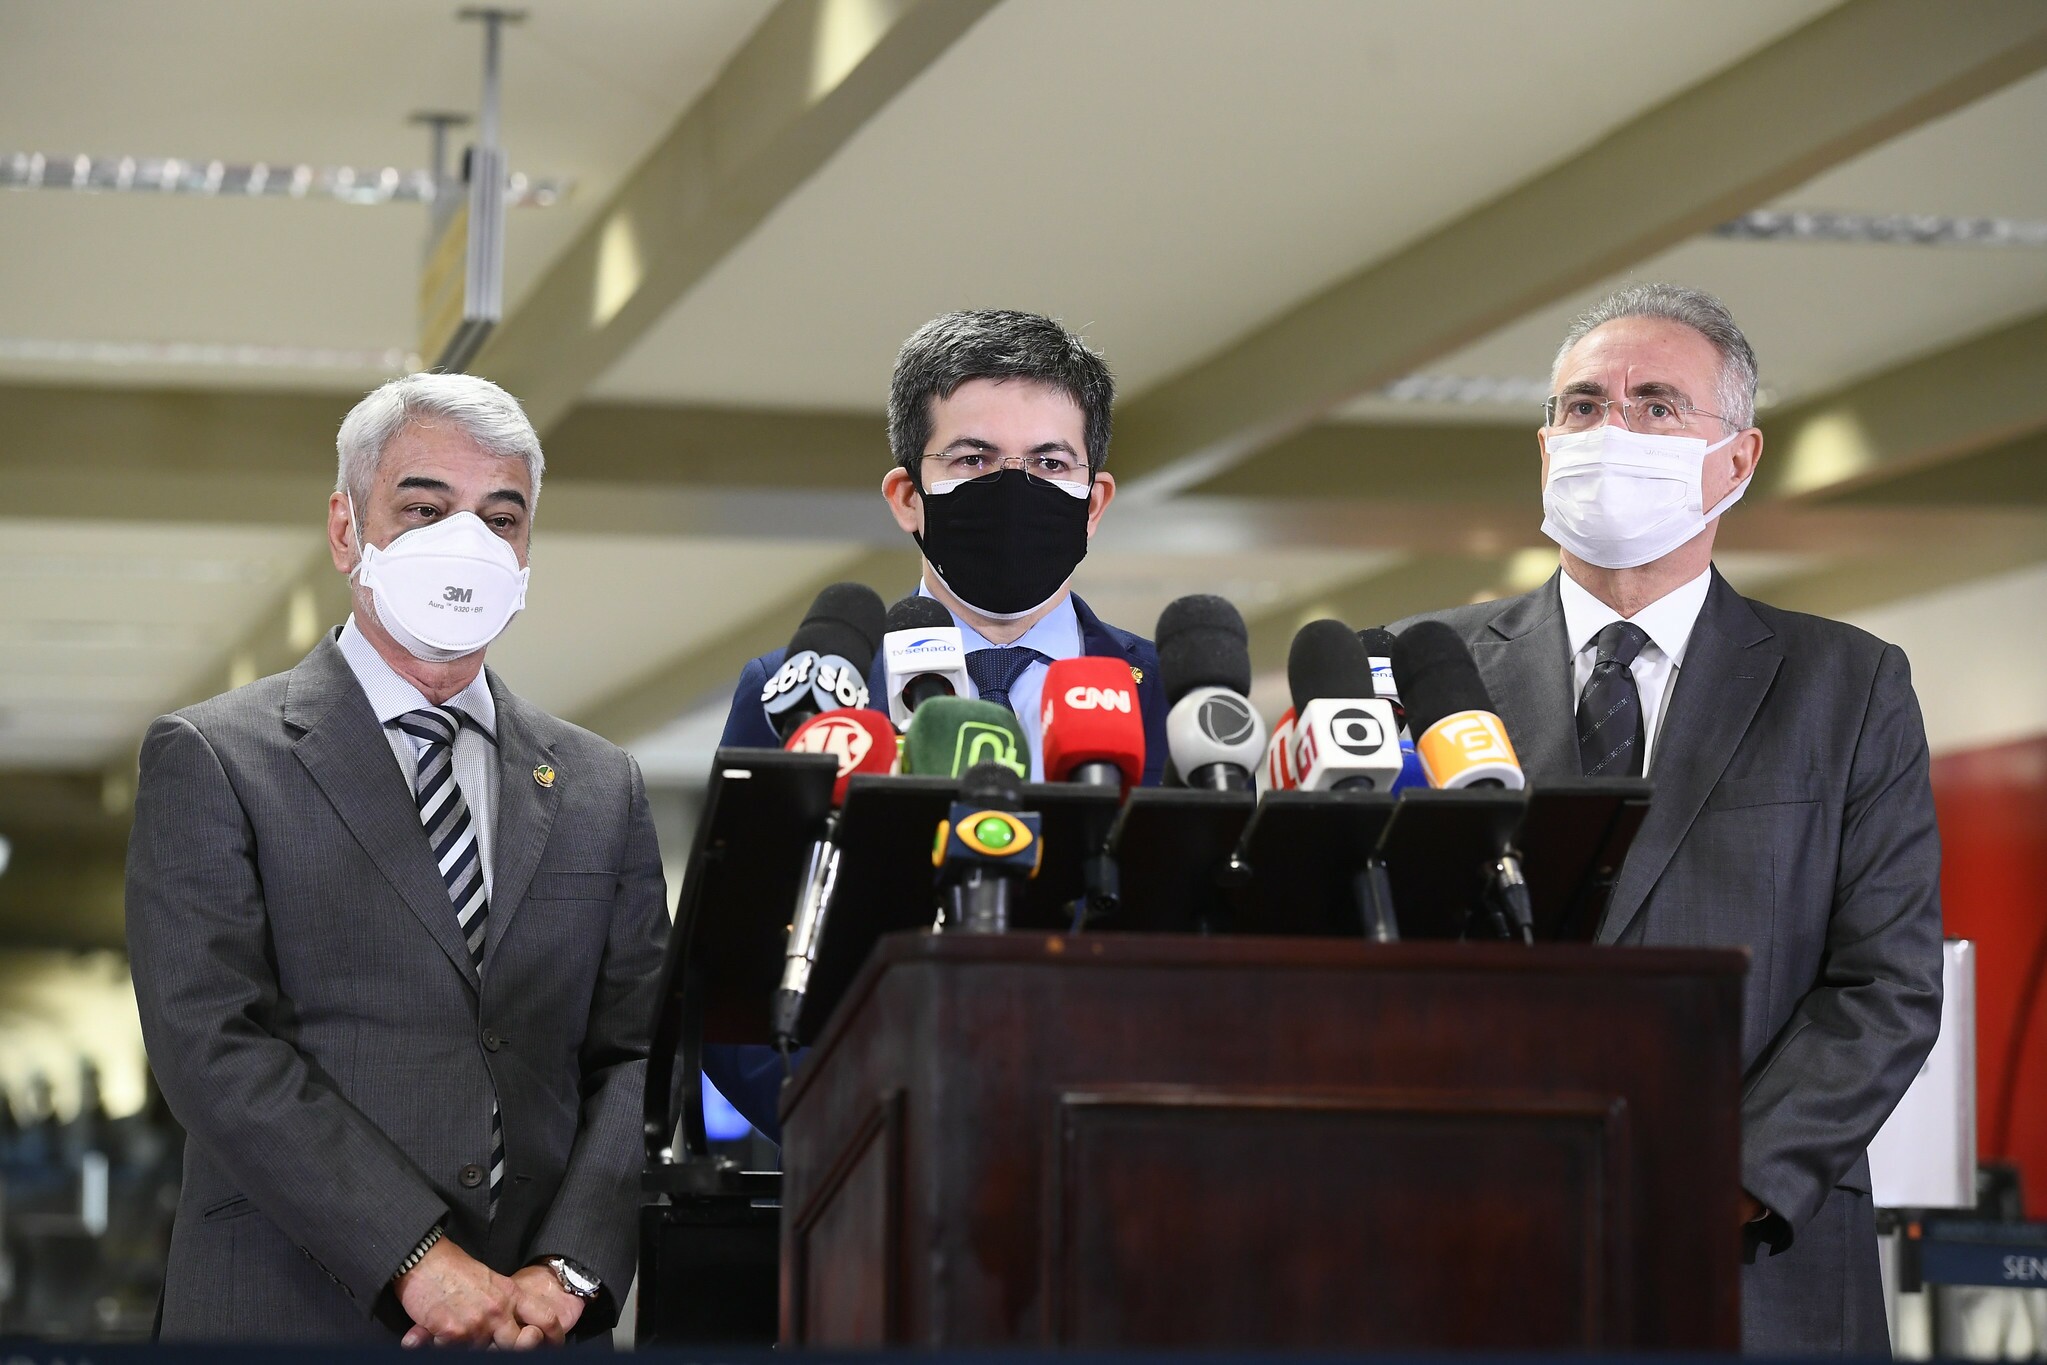 Senadores integrantes da CPI da Pandemia conversam com a imprensa sobre as ações da comissão